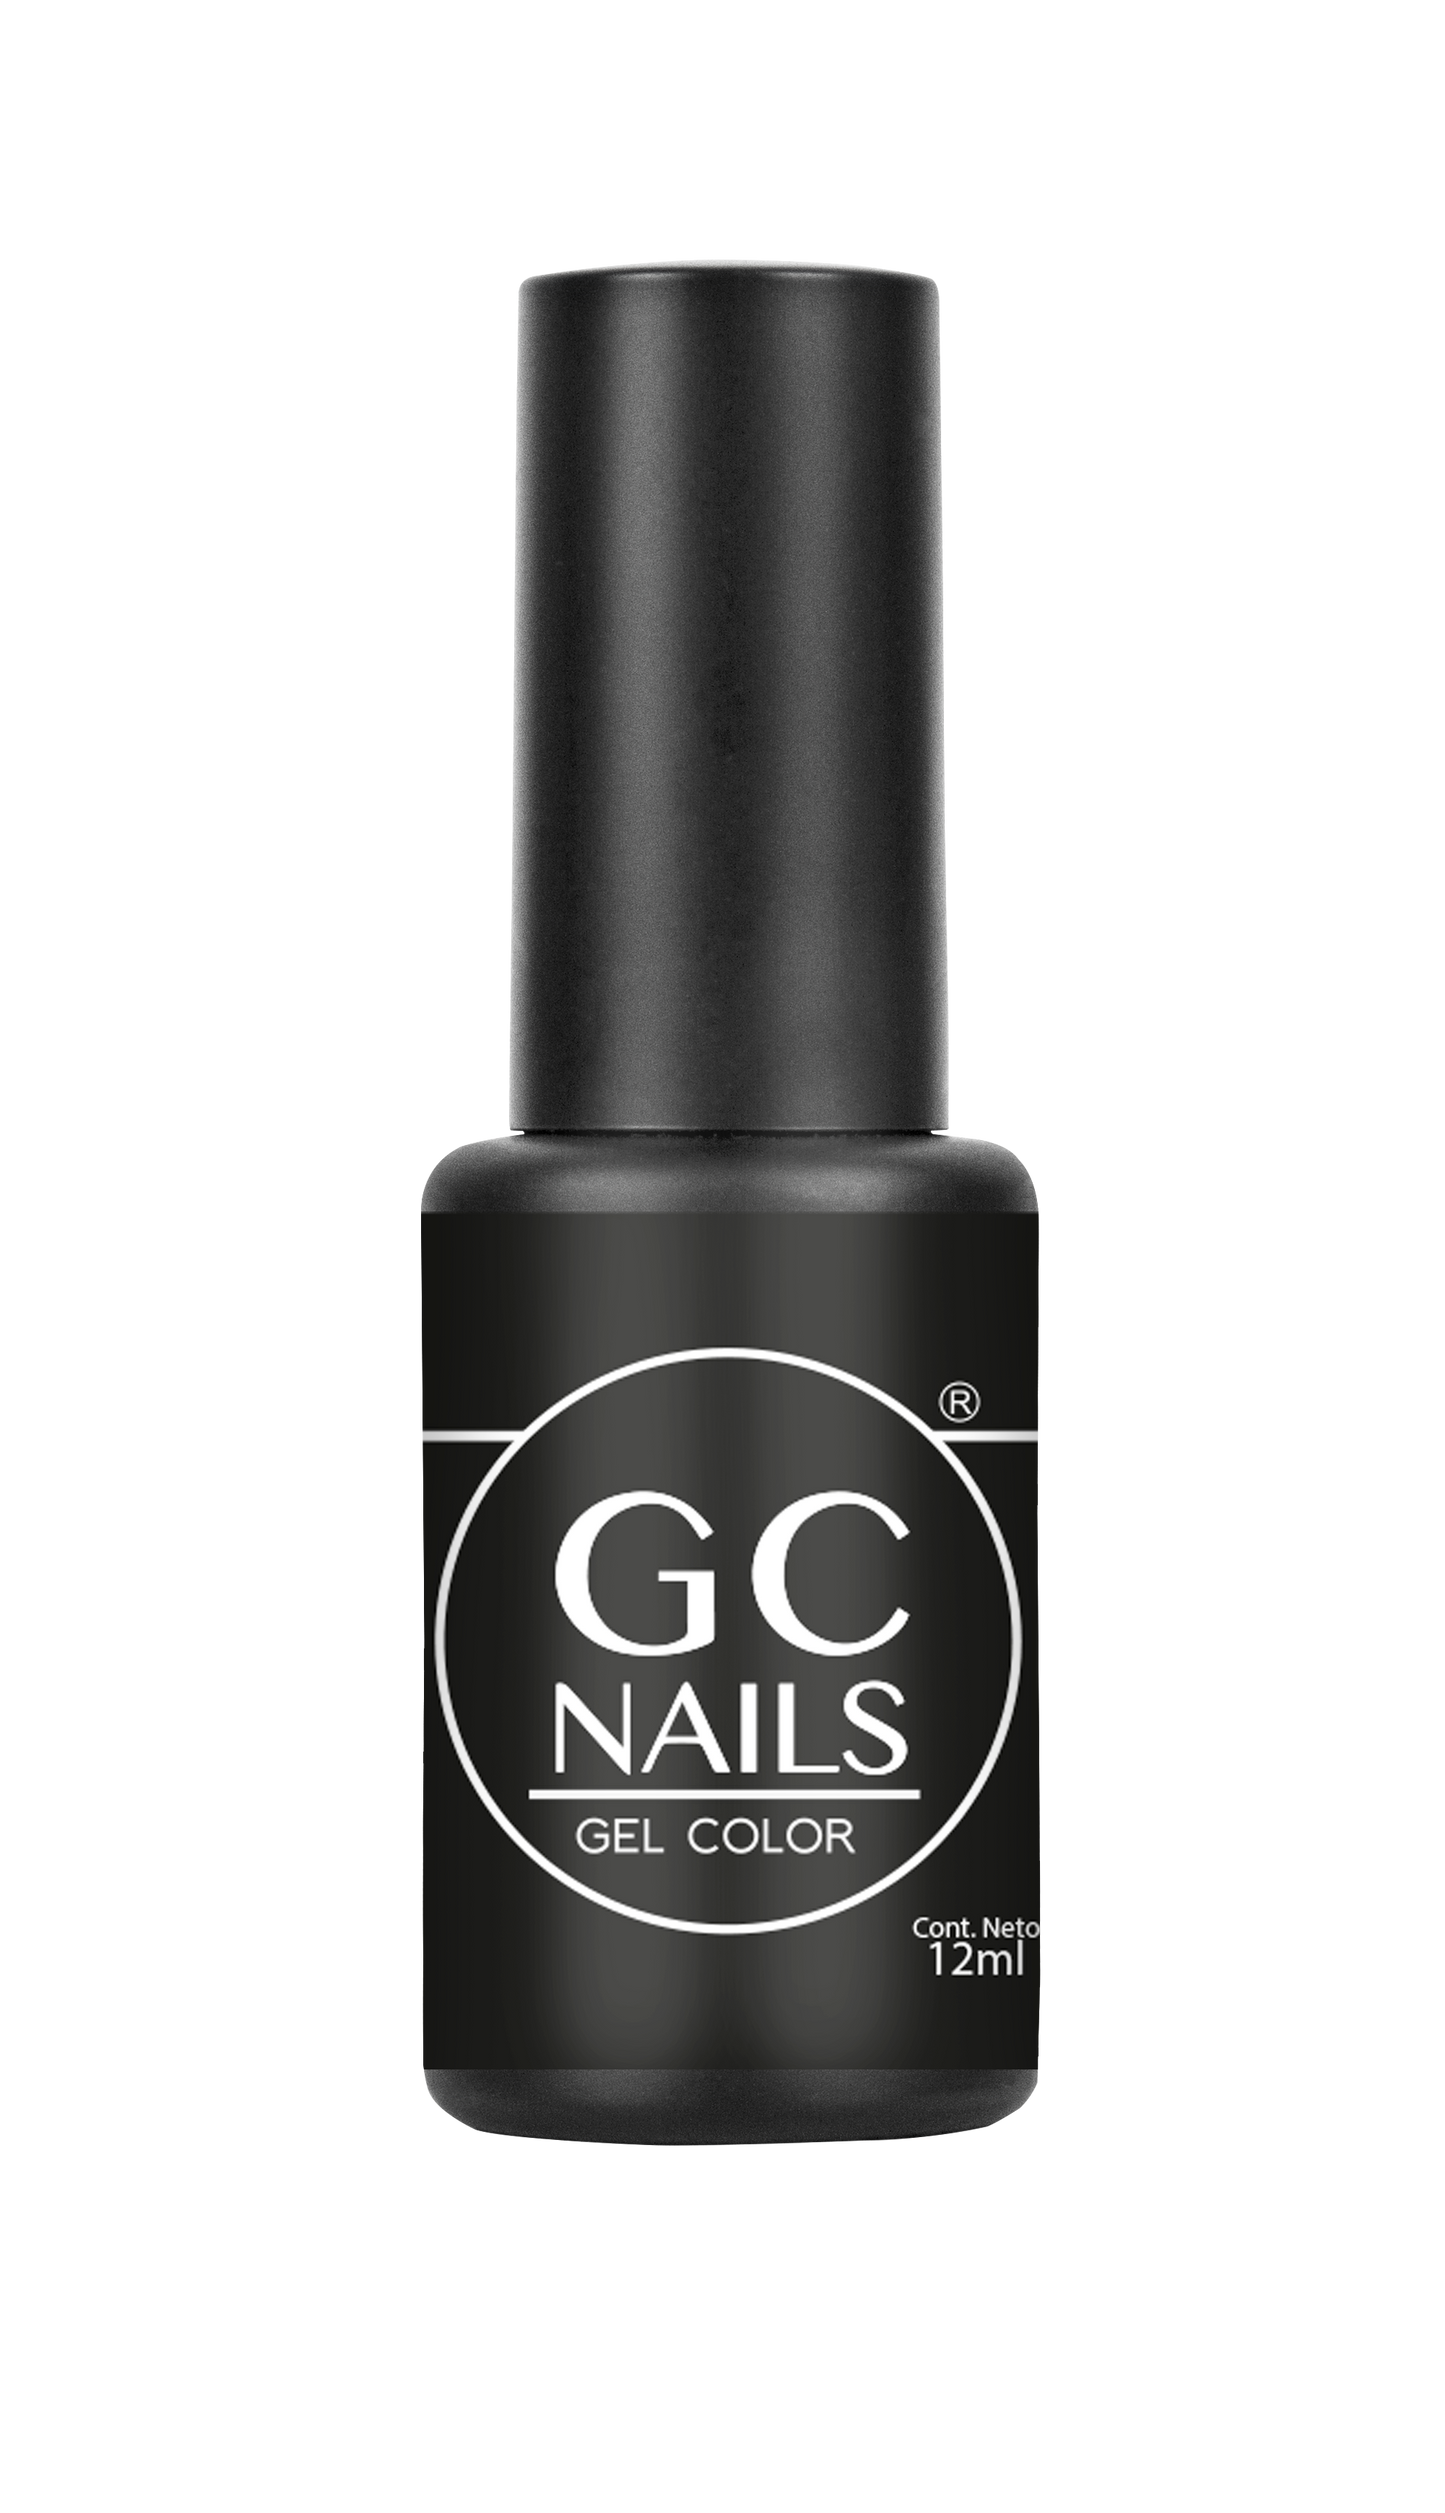 GC nails bel-color 12ml CARBON 02